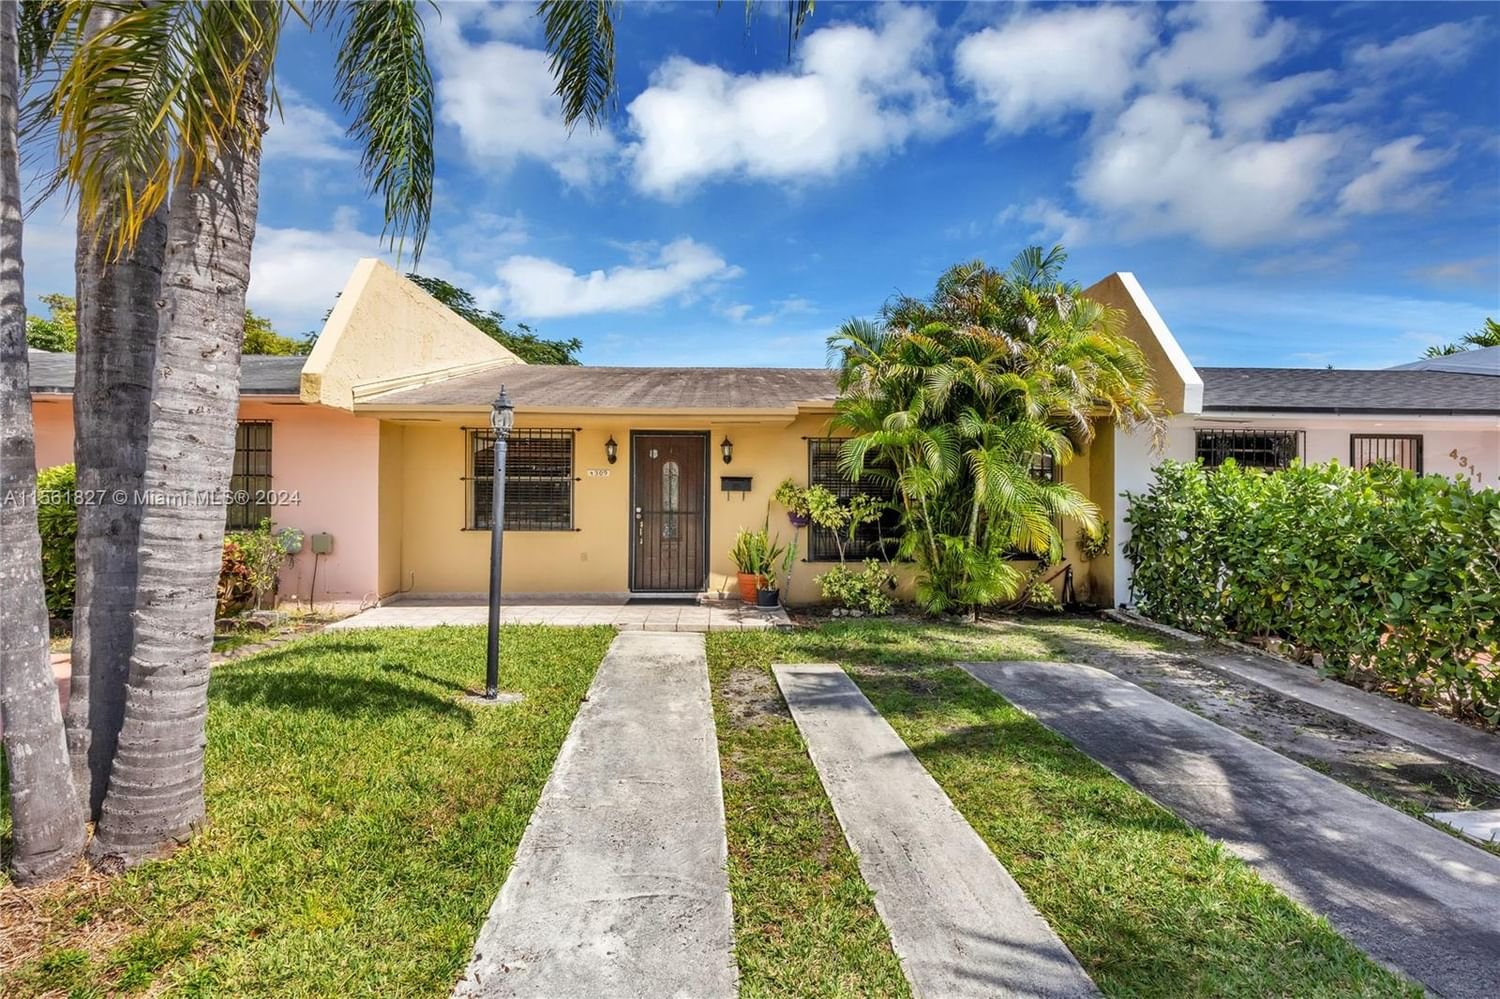 Real estate property located at 4309 69th Ave, Miami-Dade County, EL ESCORIAL, Miami, FL